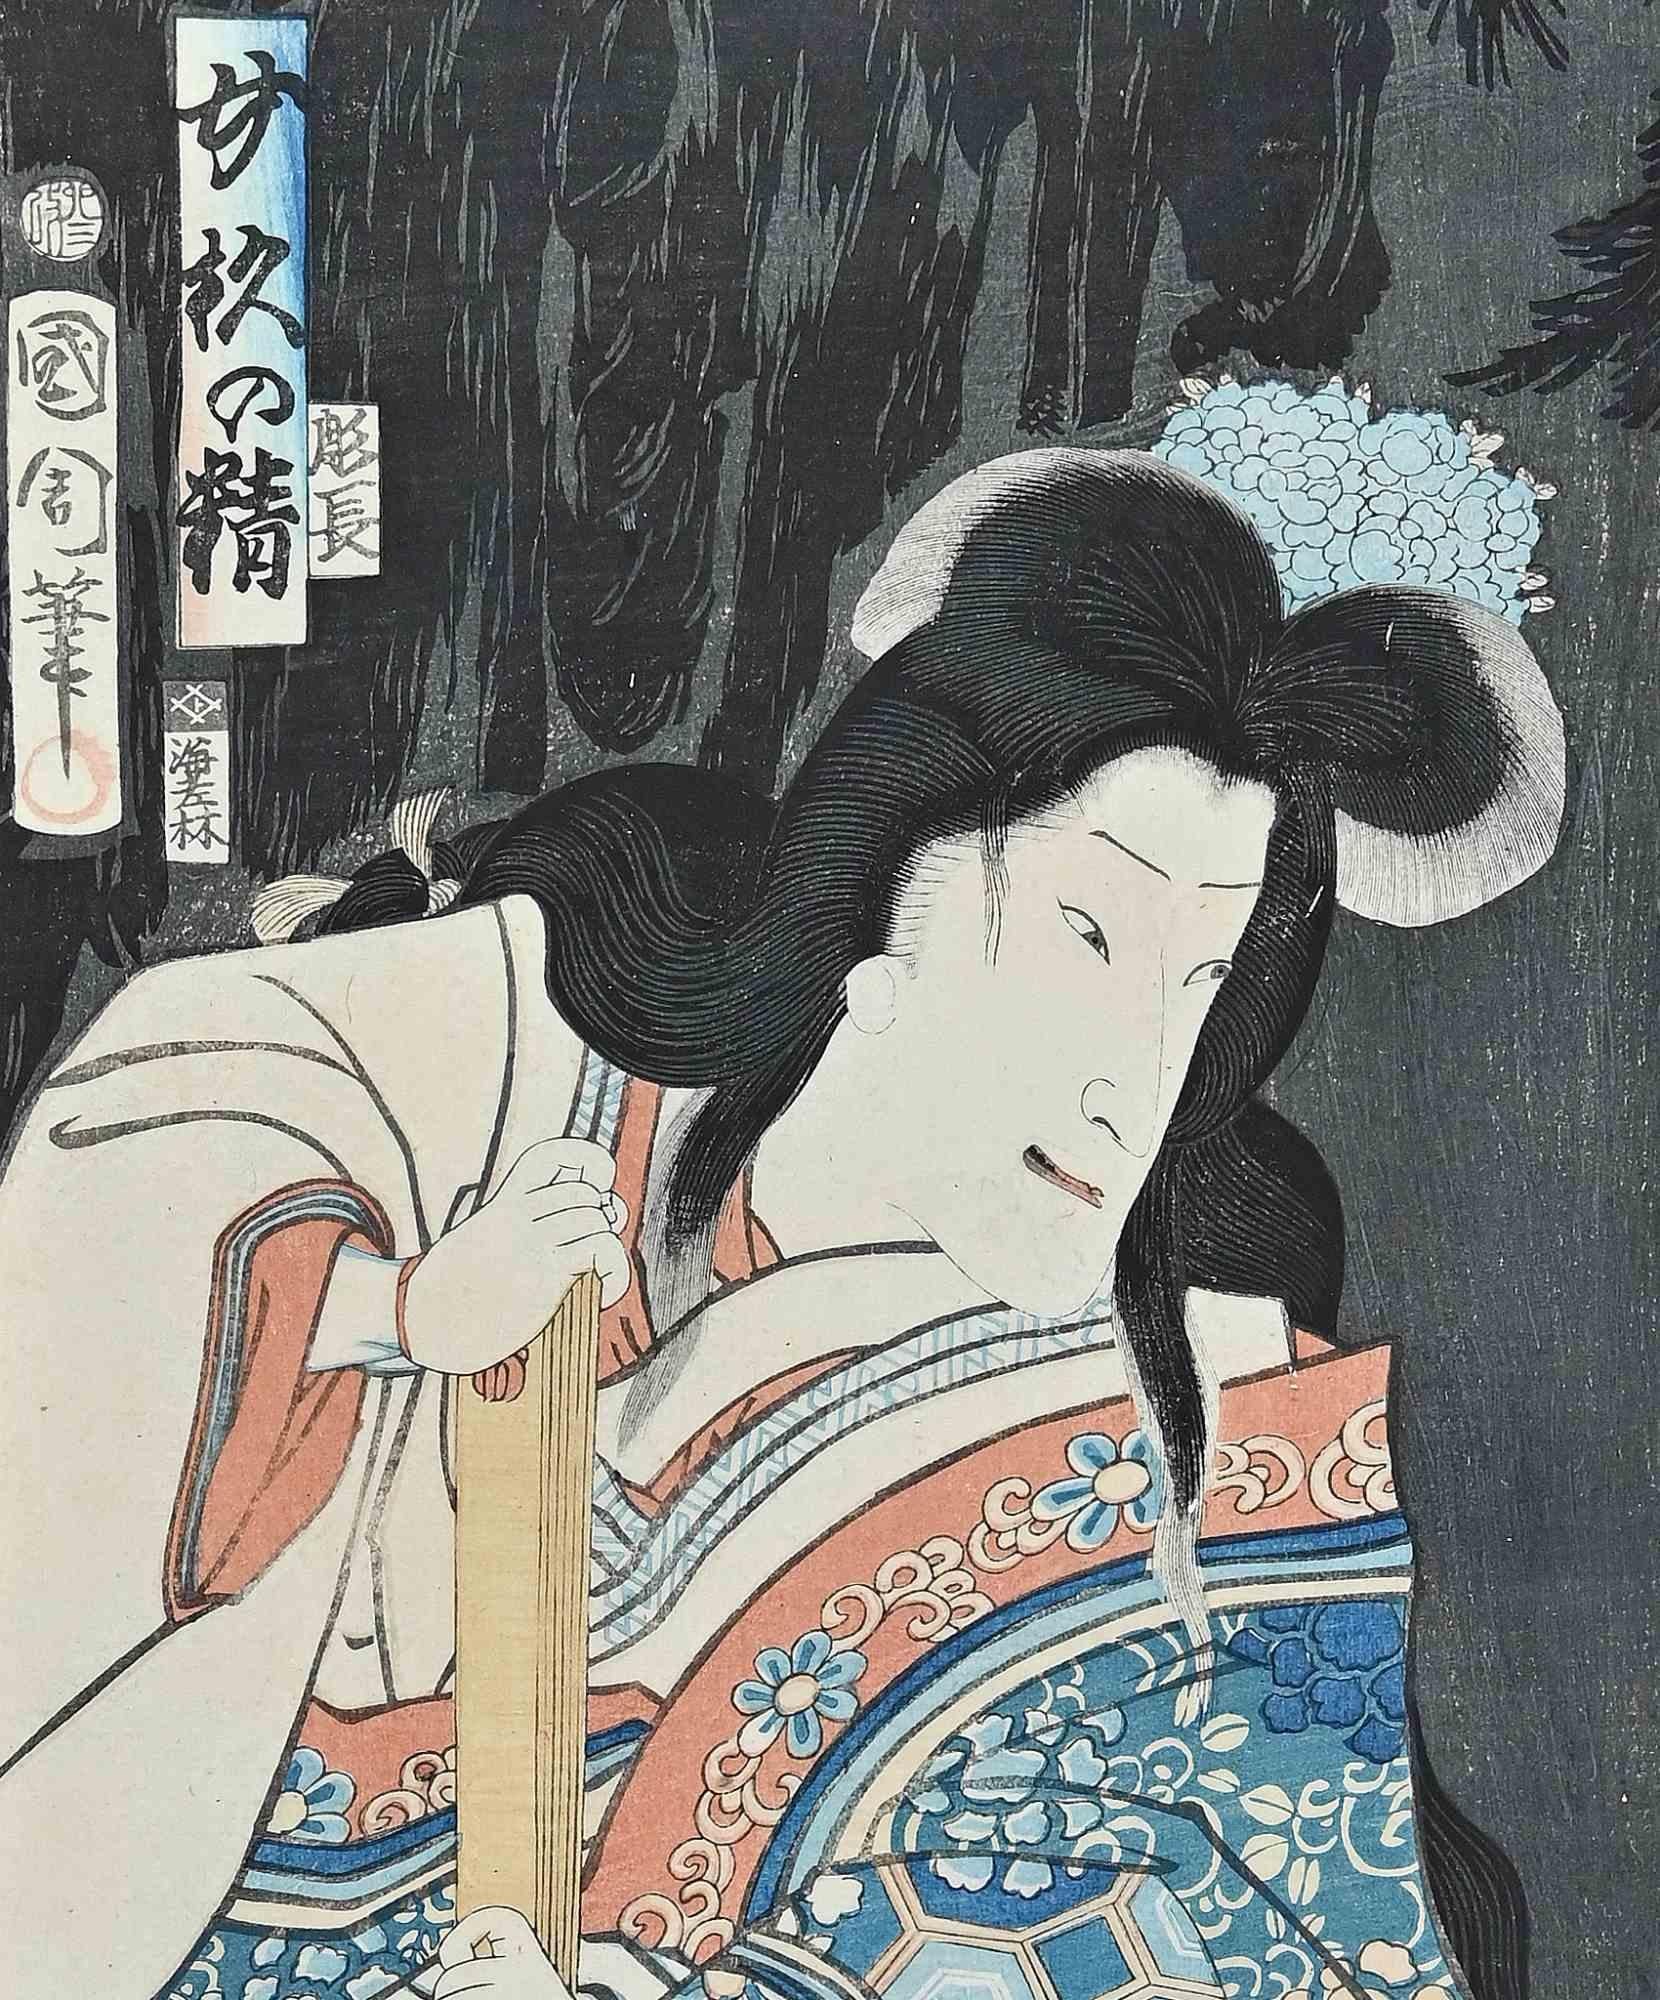 Kabuki Actor - Woodcut  after Utagawa Kunisada - Early 20th Century - Print by Utagawa Kunisada (Toyokuni III)